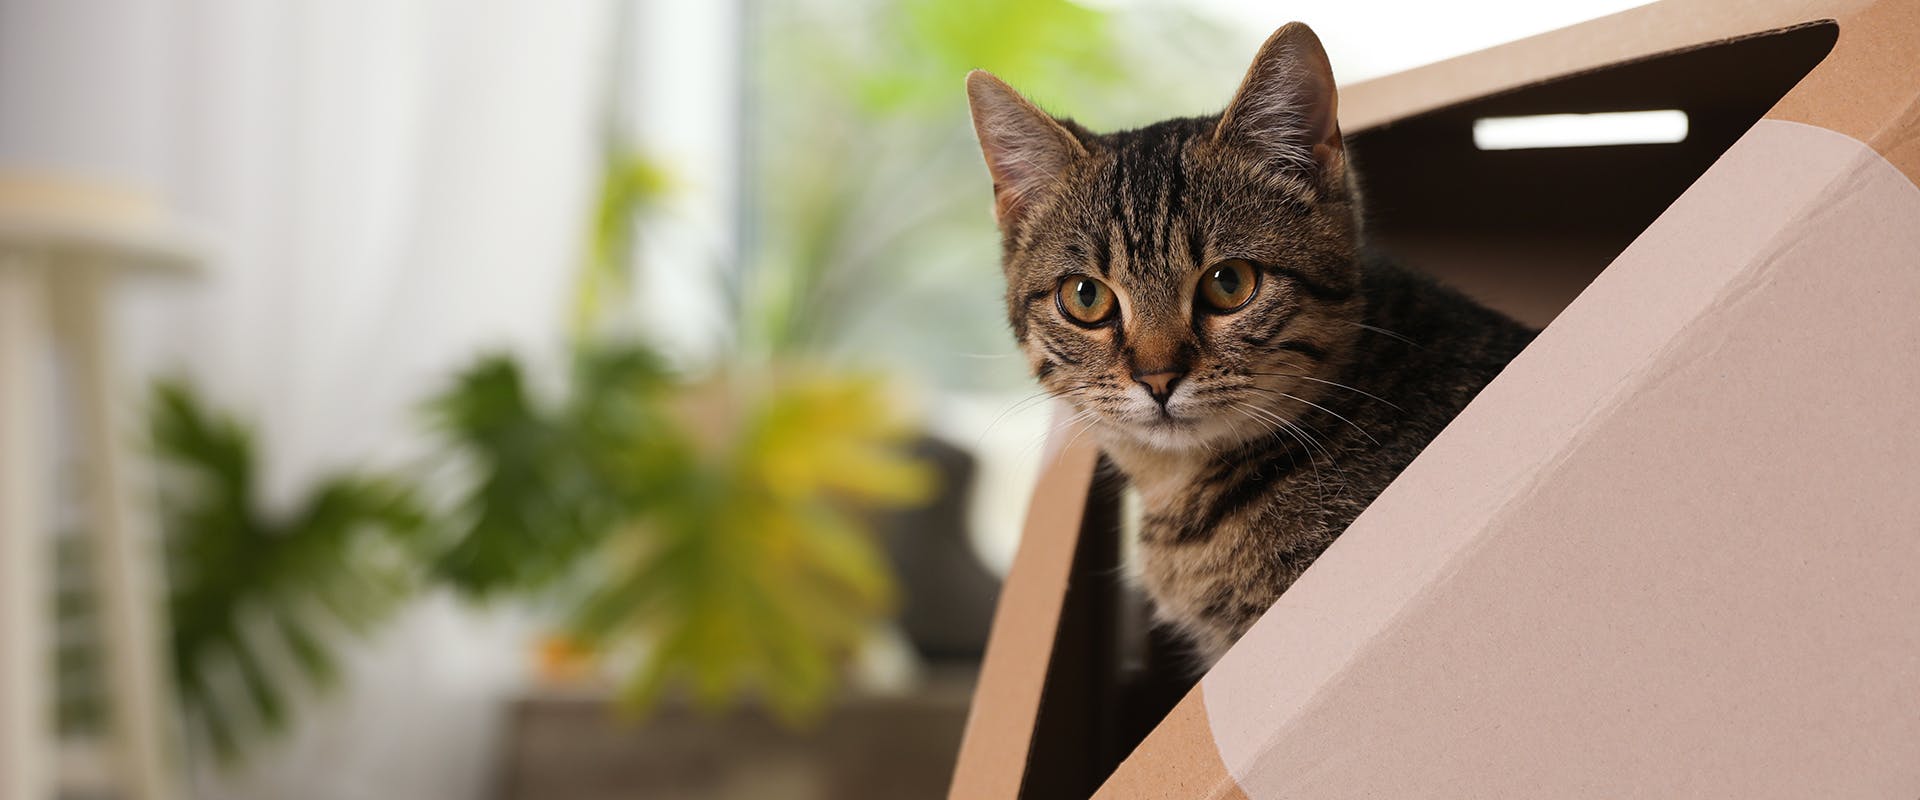 A cat sitting inside a cat cardboard house